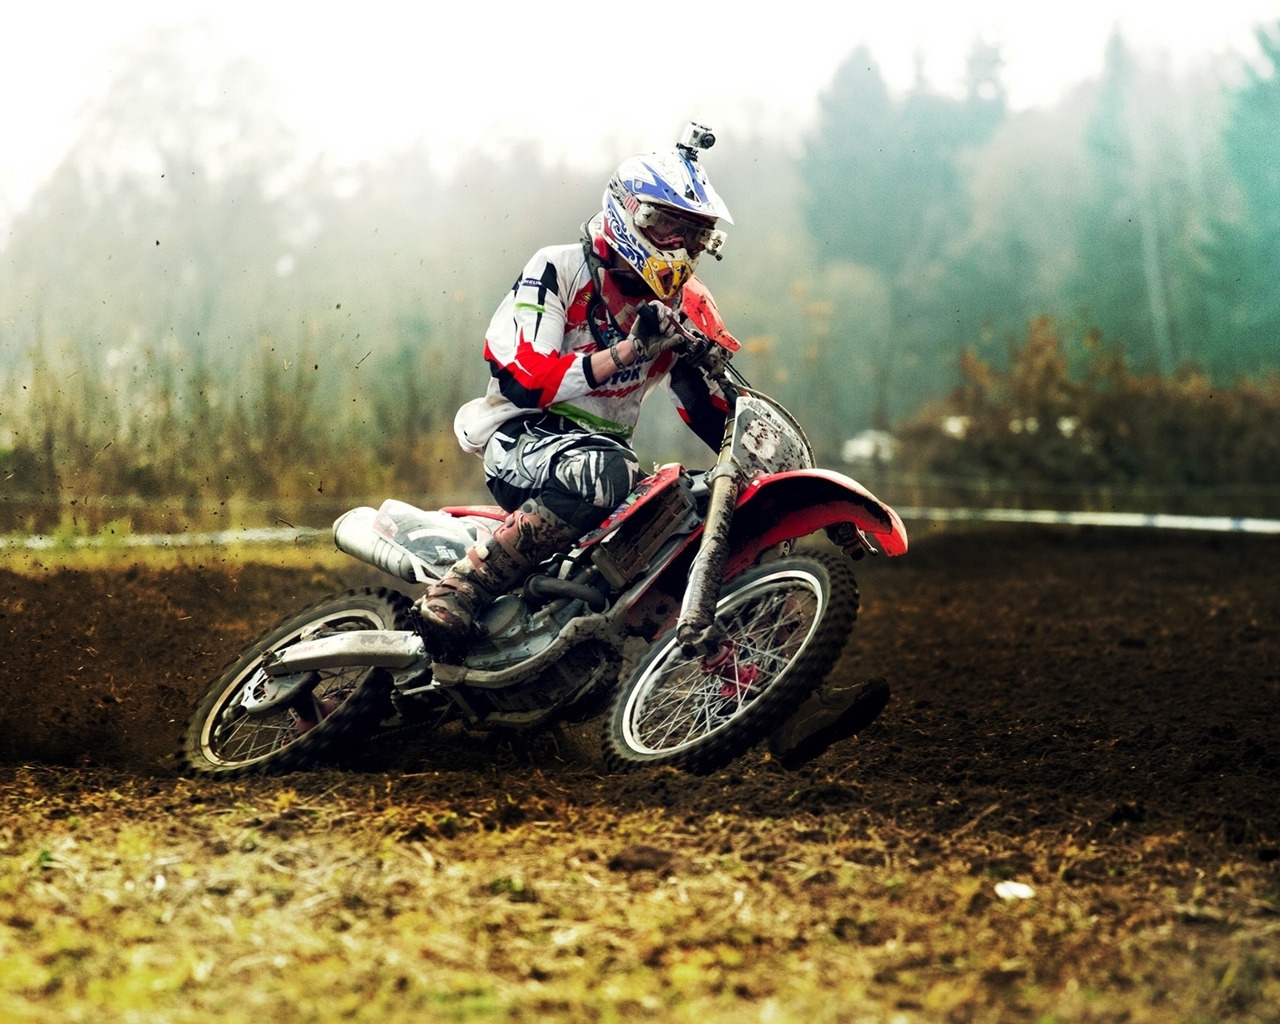 Motocross for 1280 x 1024 resolution